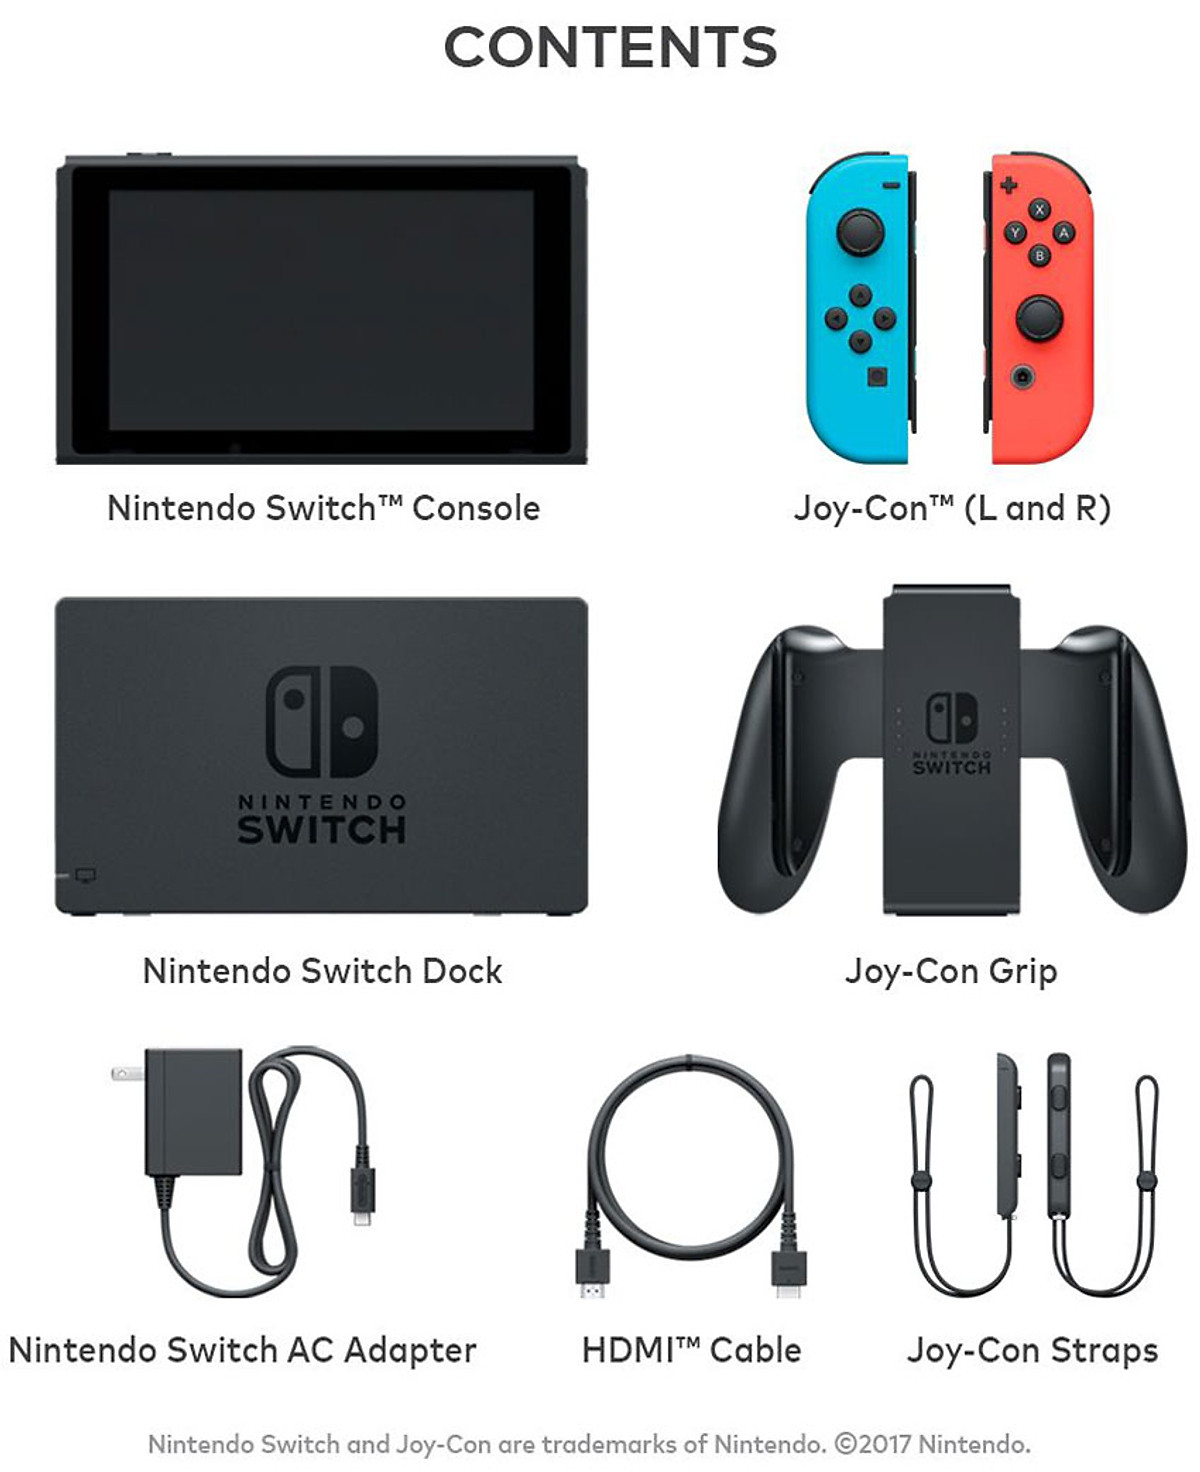 Mua Máy Chơi Game Nintendo Switch Với Neon Blue Và Red Joy‑Con (Xanh Đỏ) -  Hàng Nhập Khẩu Tại Lê Quang Store | Tiki